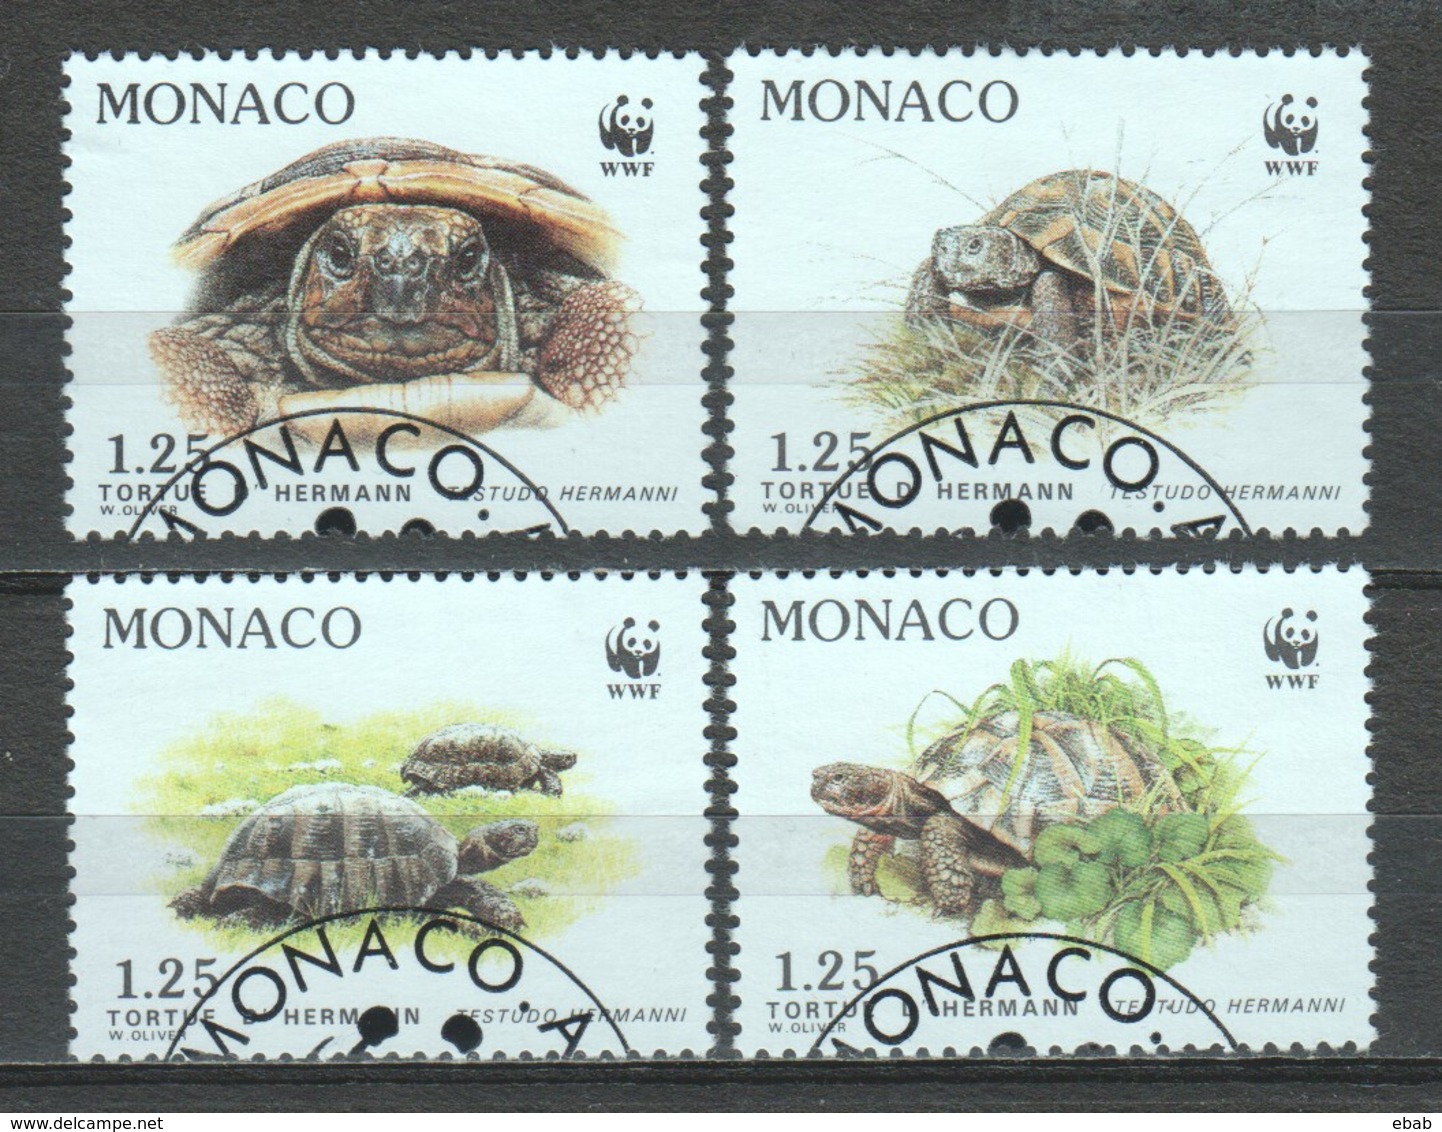 Monaco 1991 Mi 2046-2049 WWF TURTLES - Usados